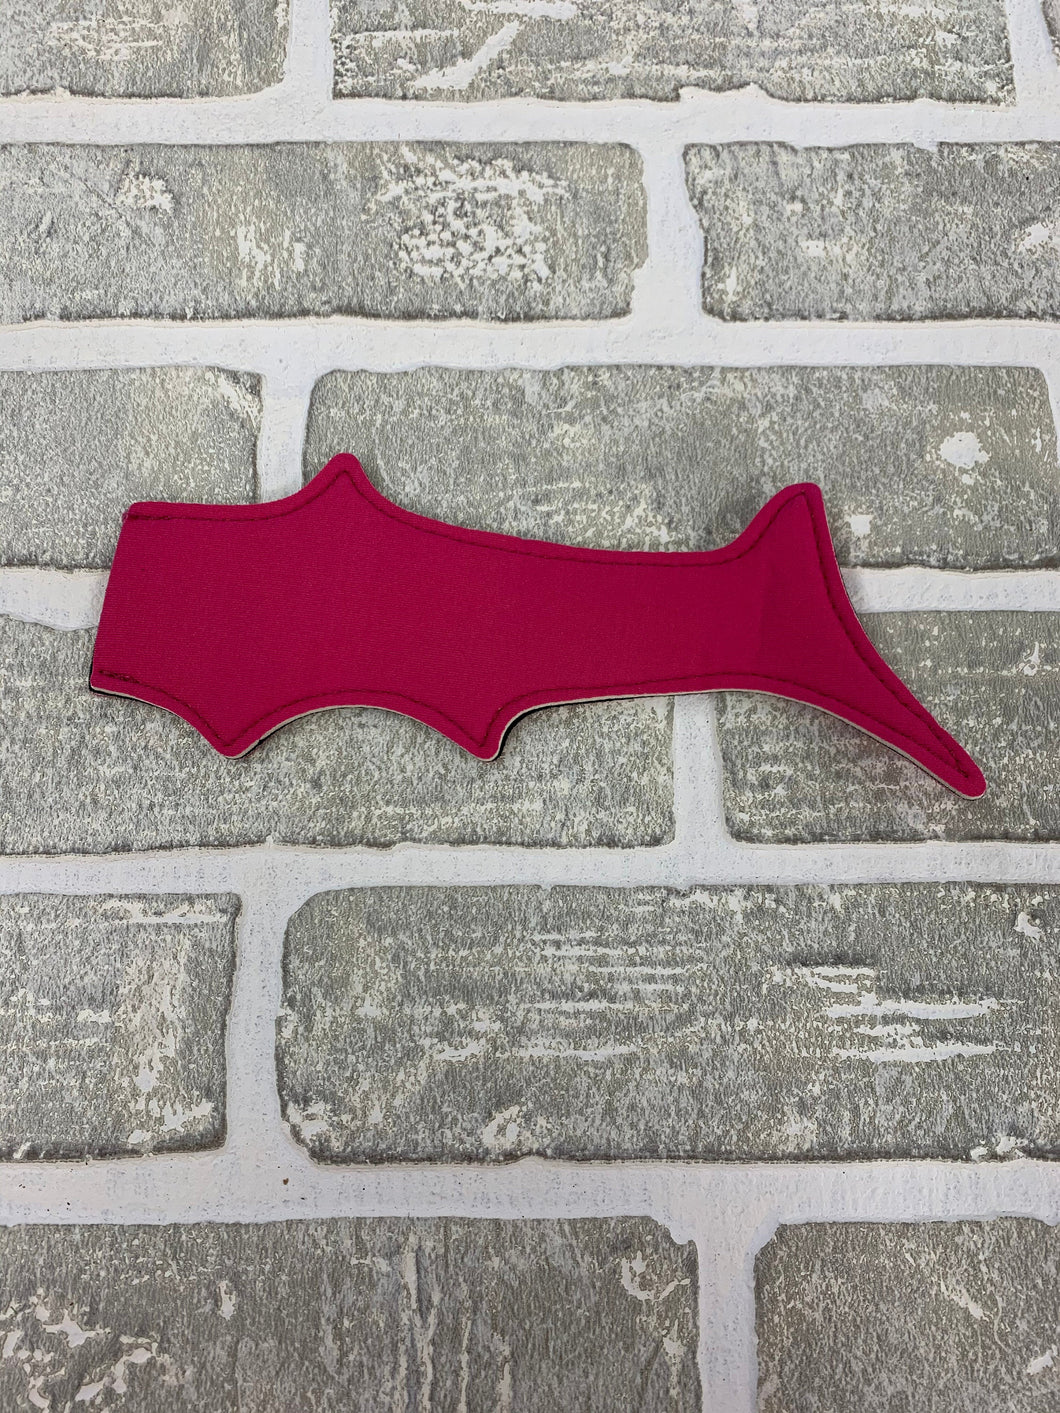 Pink shark popsicle holder blanks